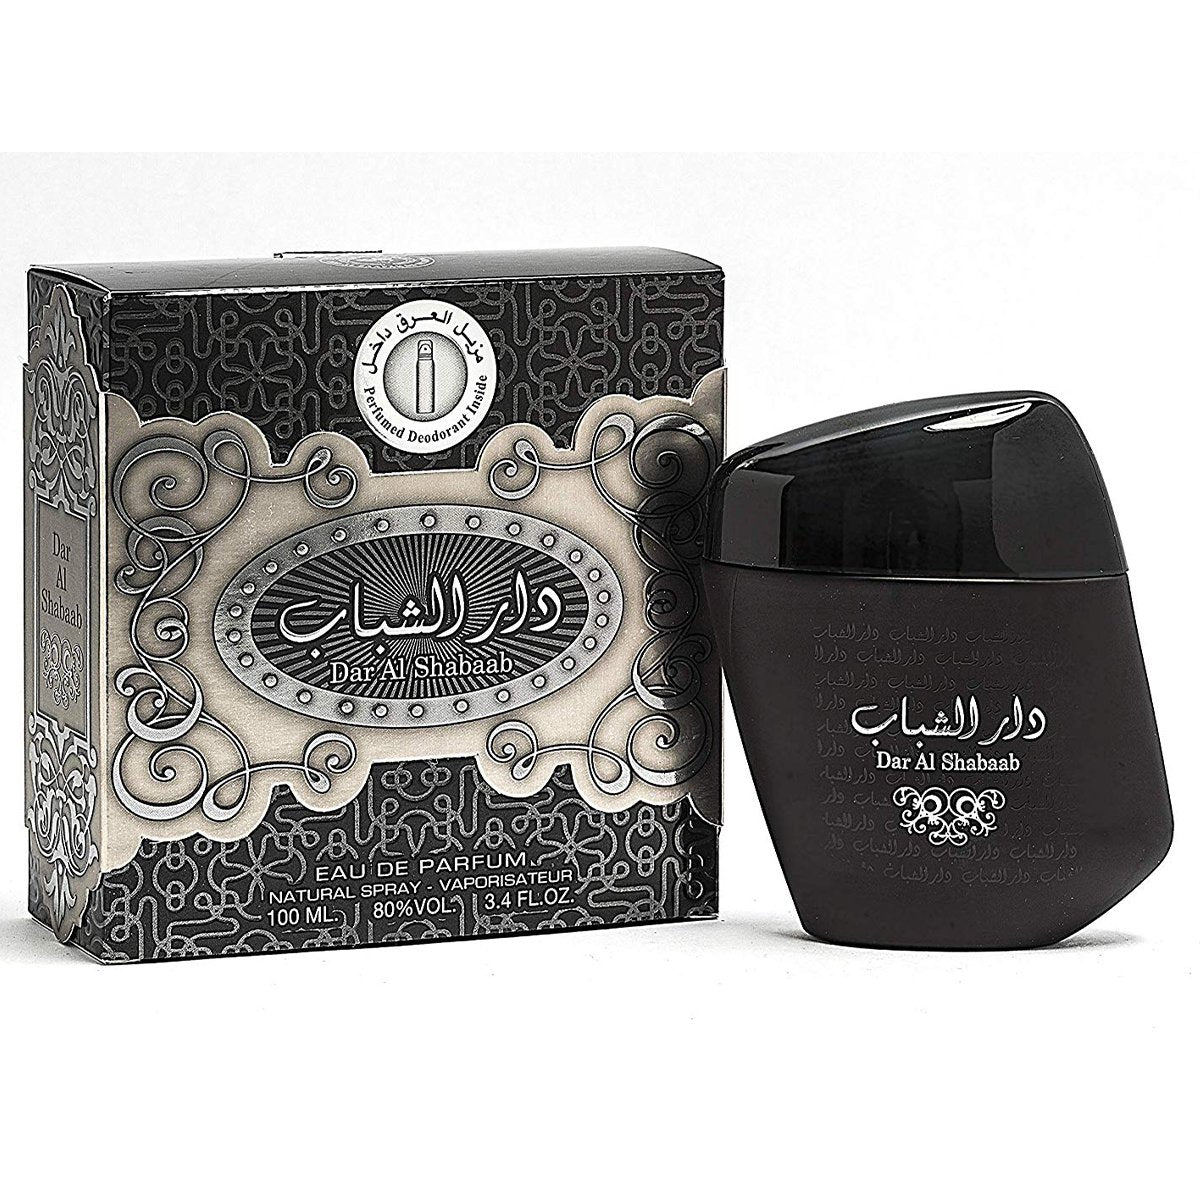 Dar Al Shabaab Eau de Parfum 100ml Ard Al Zaafaran-Perfume Heaven